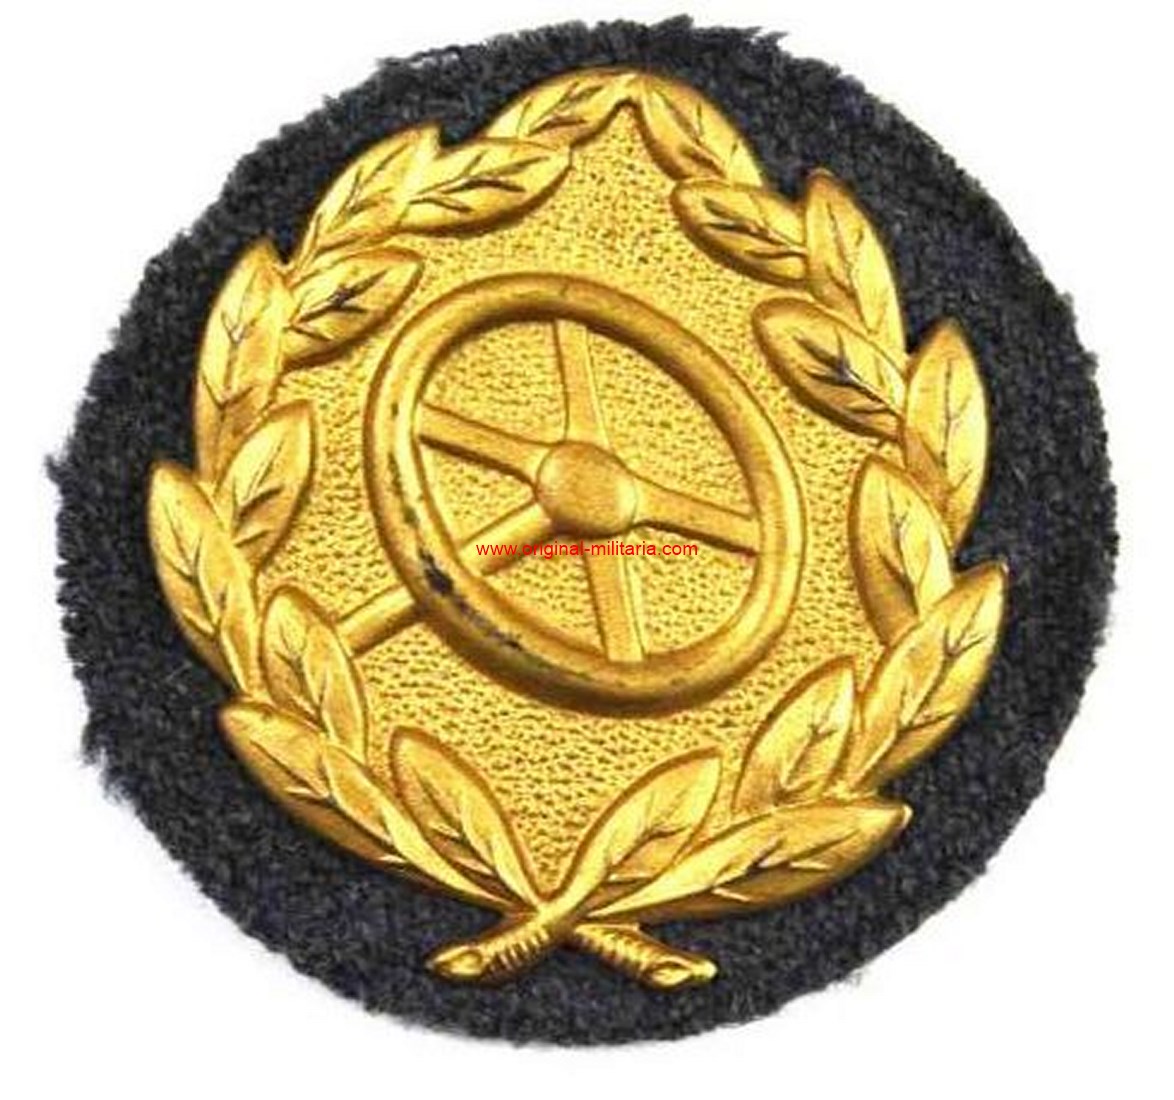 LW/ Distintivo de Conductores en Oro